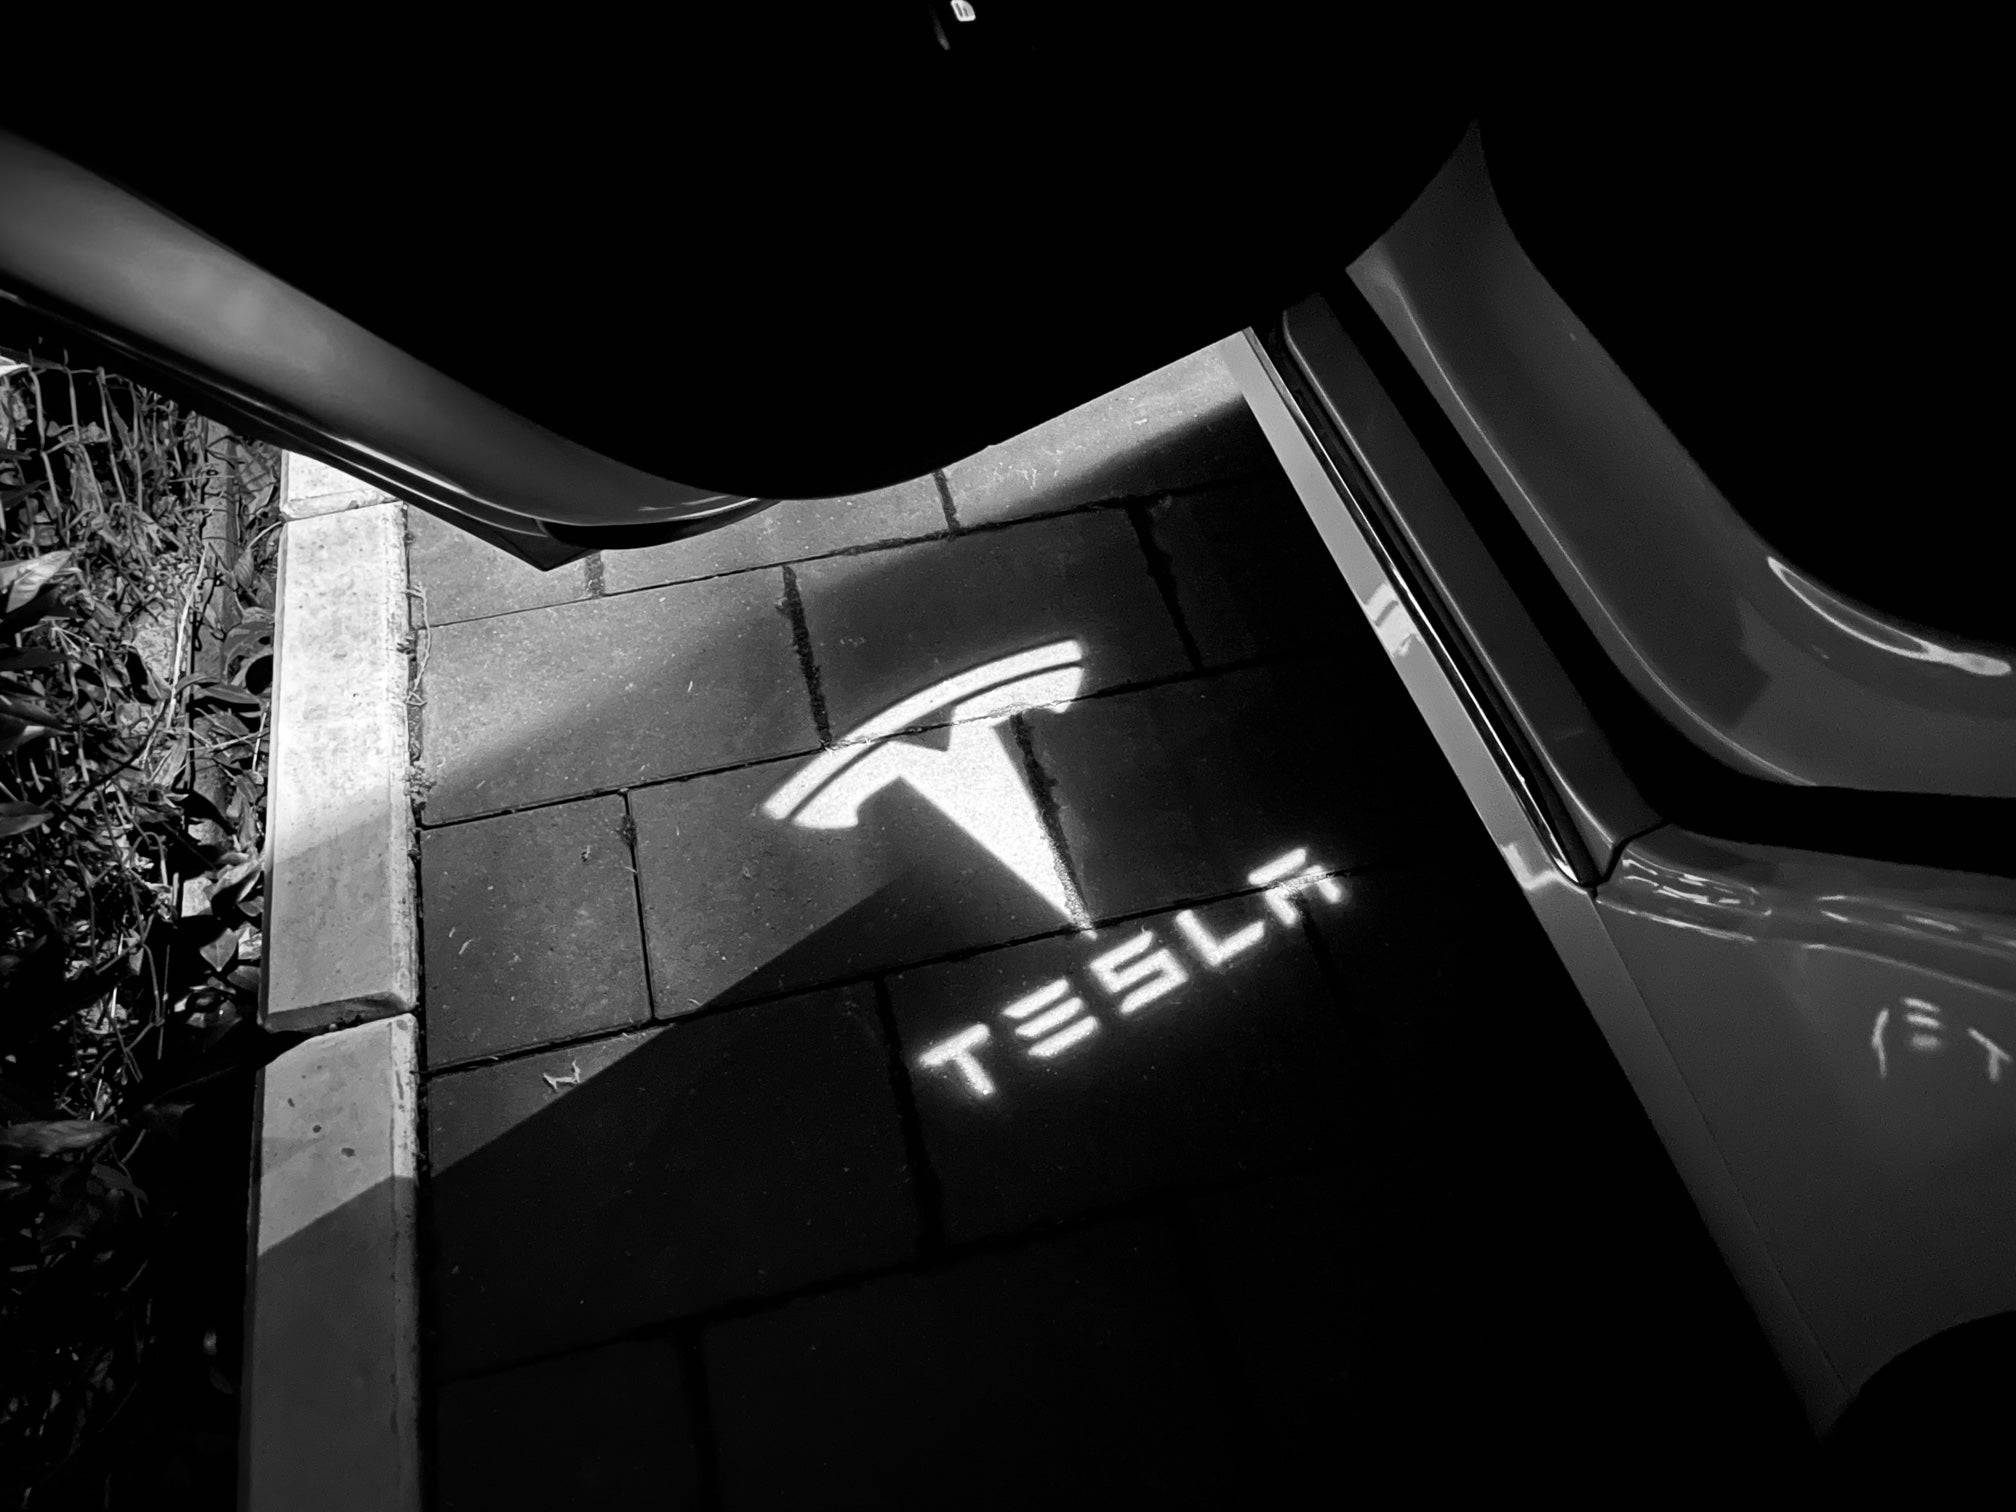 2 Stück Tesla Autotür Licht, LED Autotür Logo Lichter, Autotür Projektor  für Tesla Model 3, Model S, Model X, Model Y, € 49,90 (1080 Wien) -  willhaben